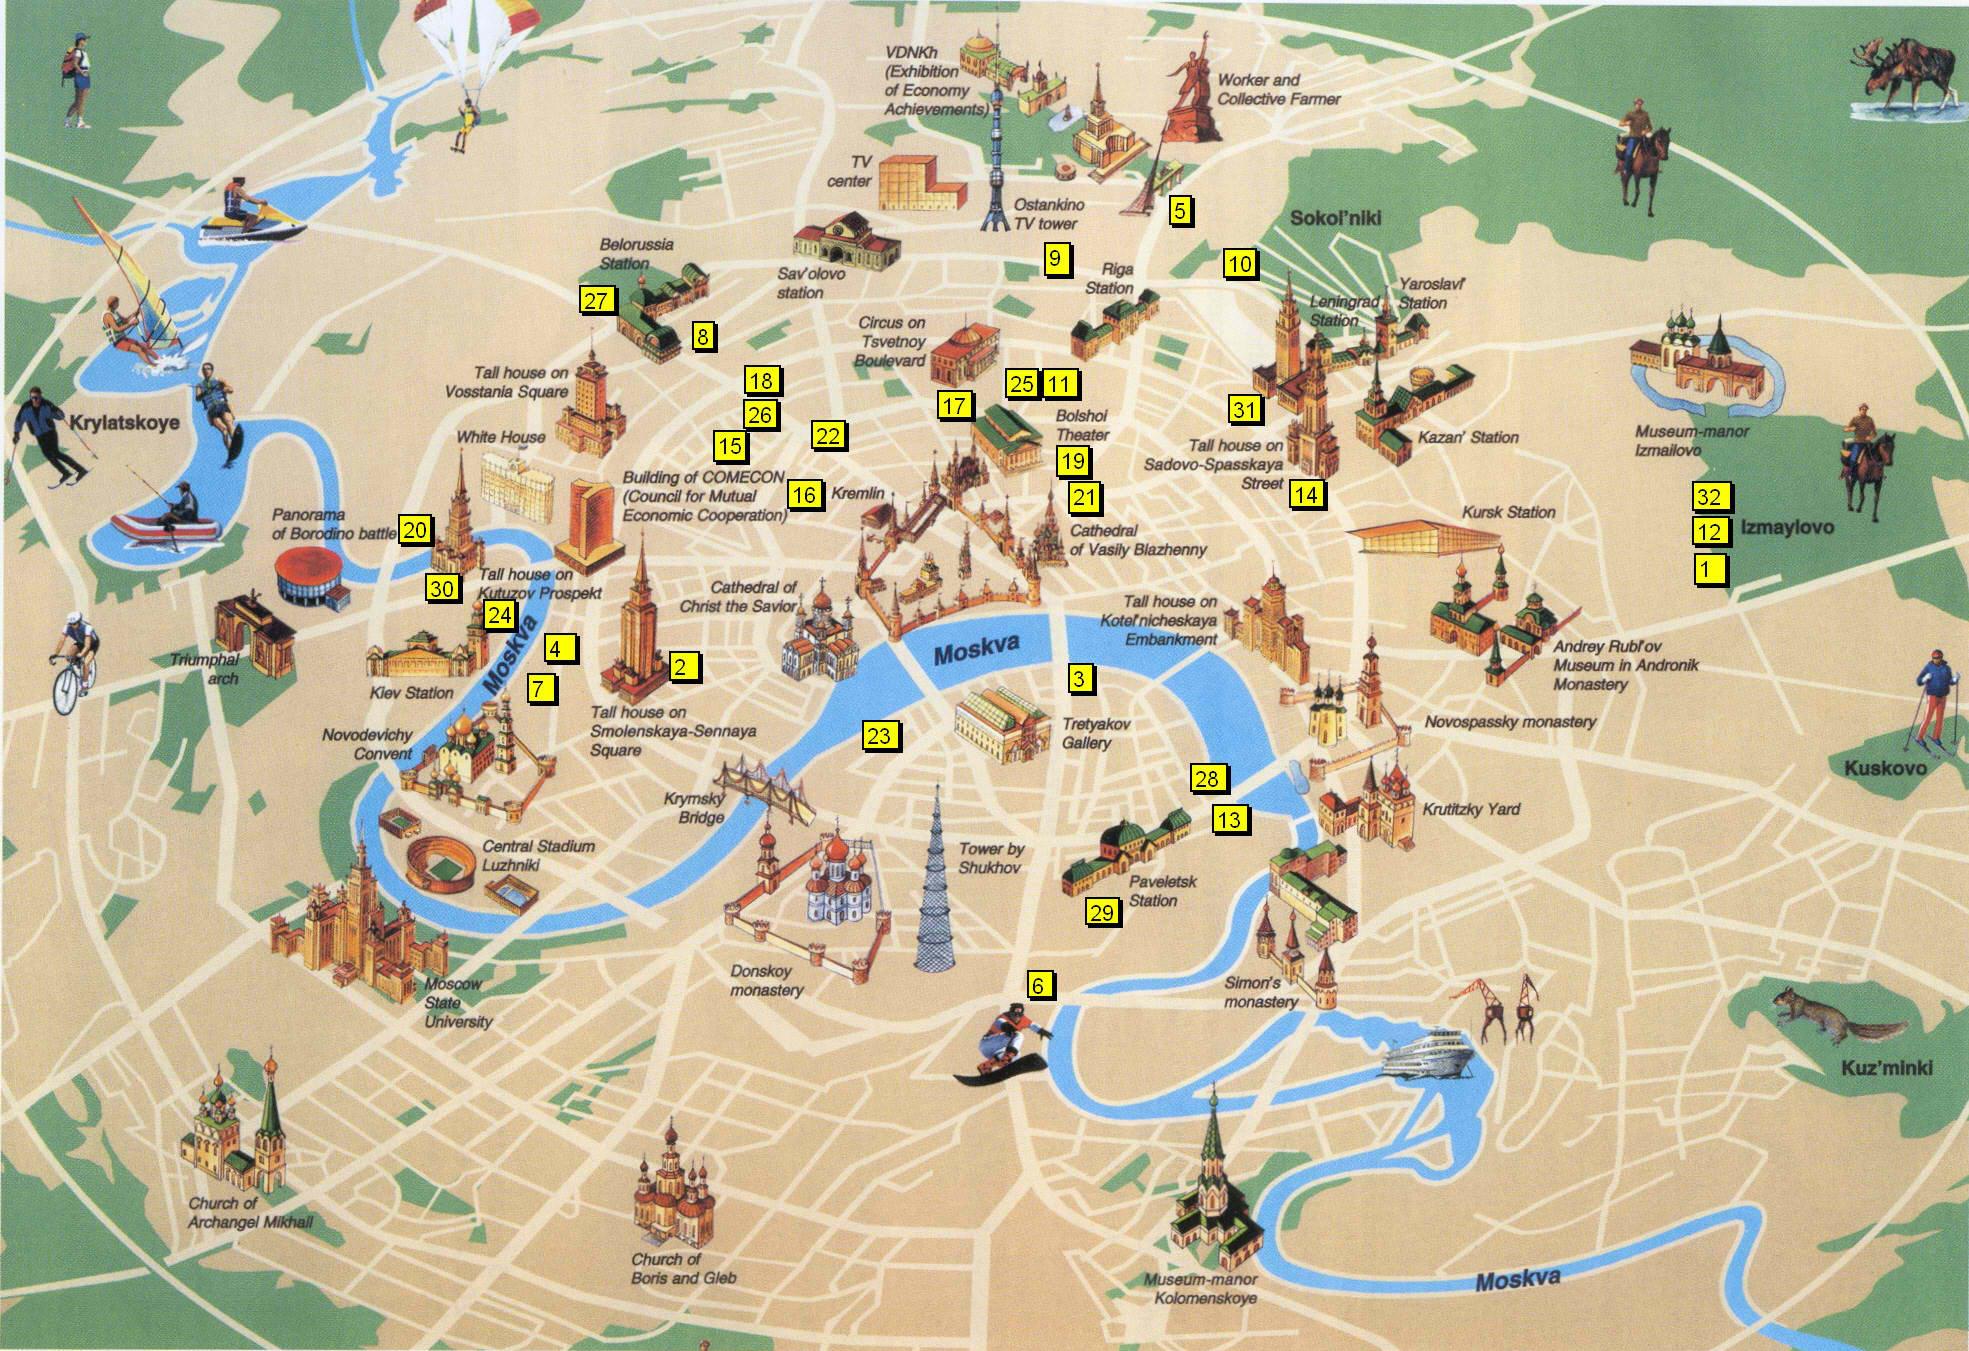 london látnivalók térkép Londoni turisztikai látnivalók térkép   London Térkép látnivalók  london látnivalók térkép